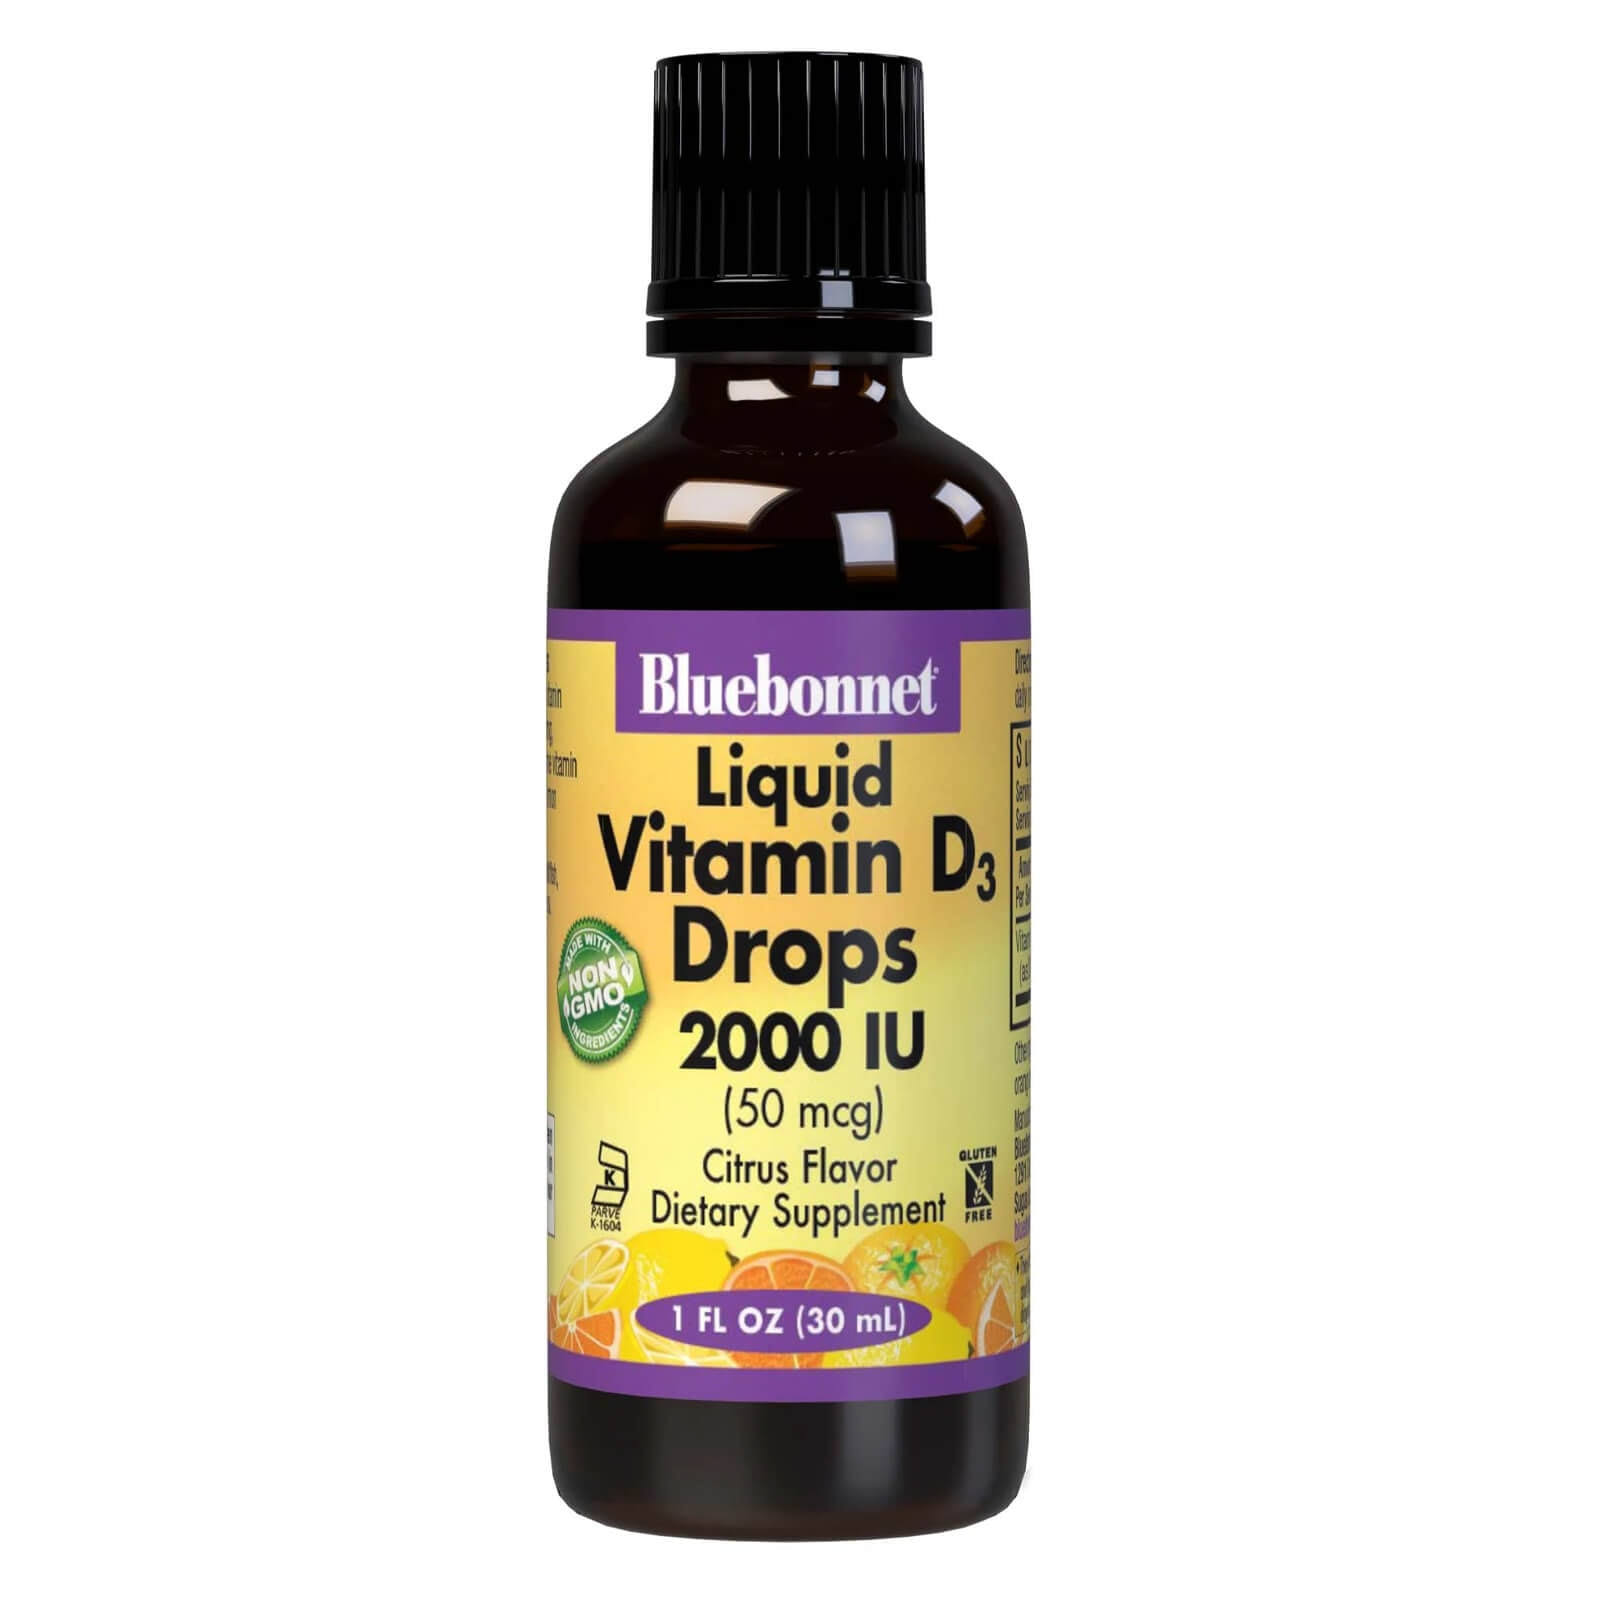 Bluebonnet Liquid Vitamin D3 Drops Supplement - Citrus, 1oz